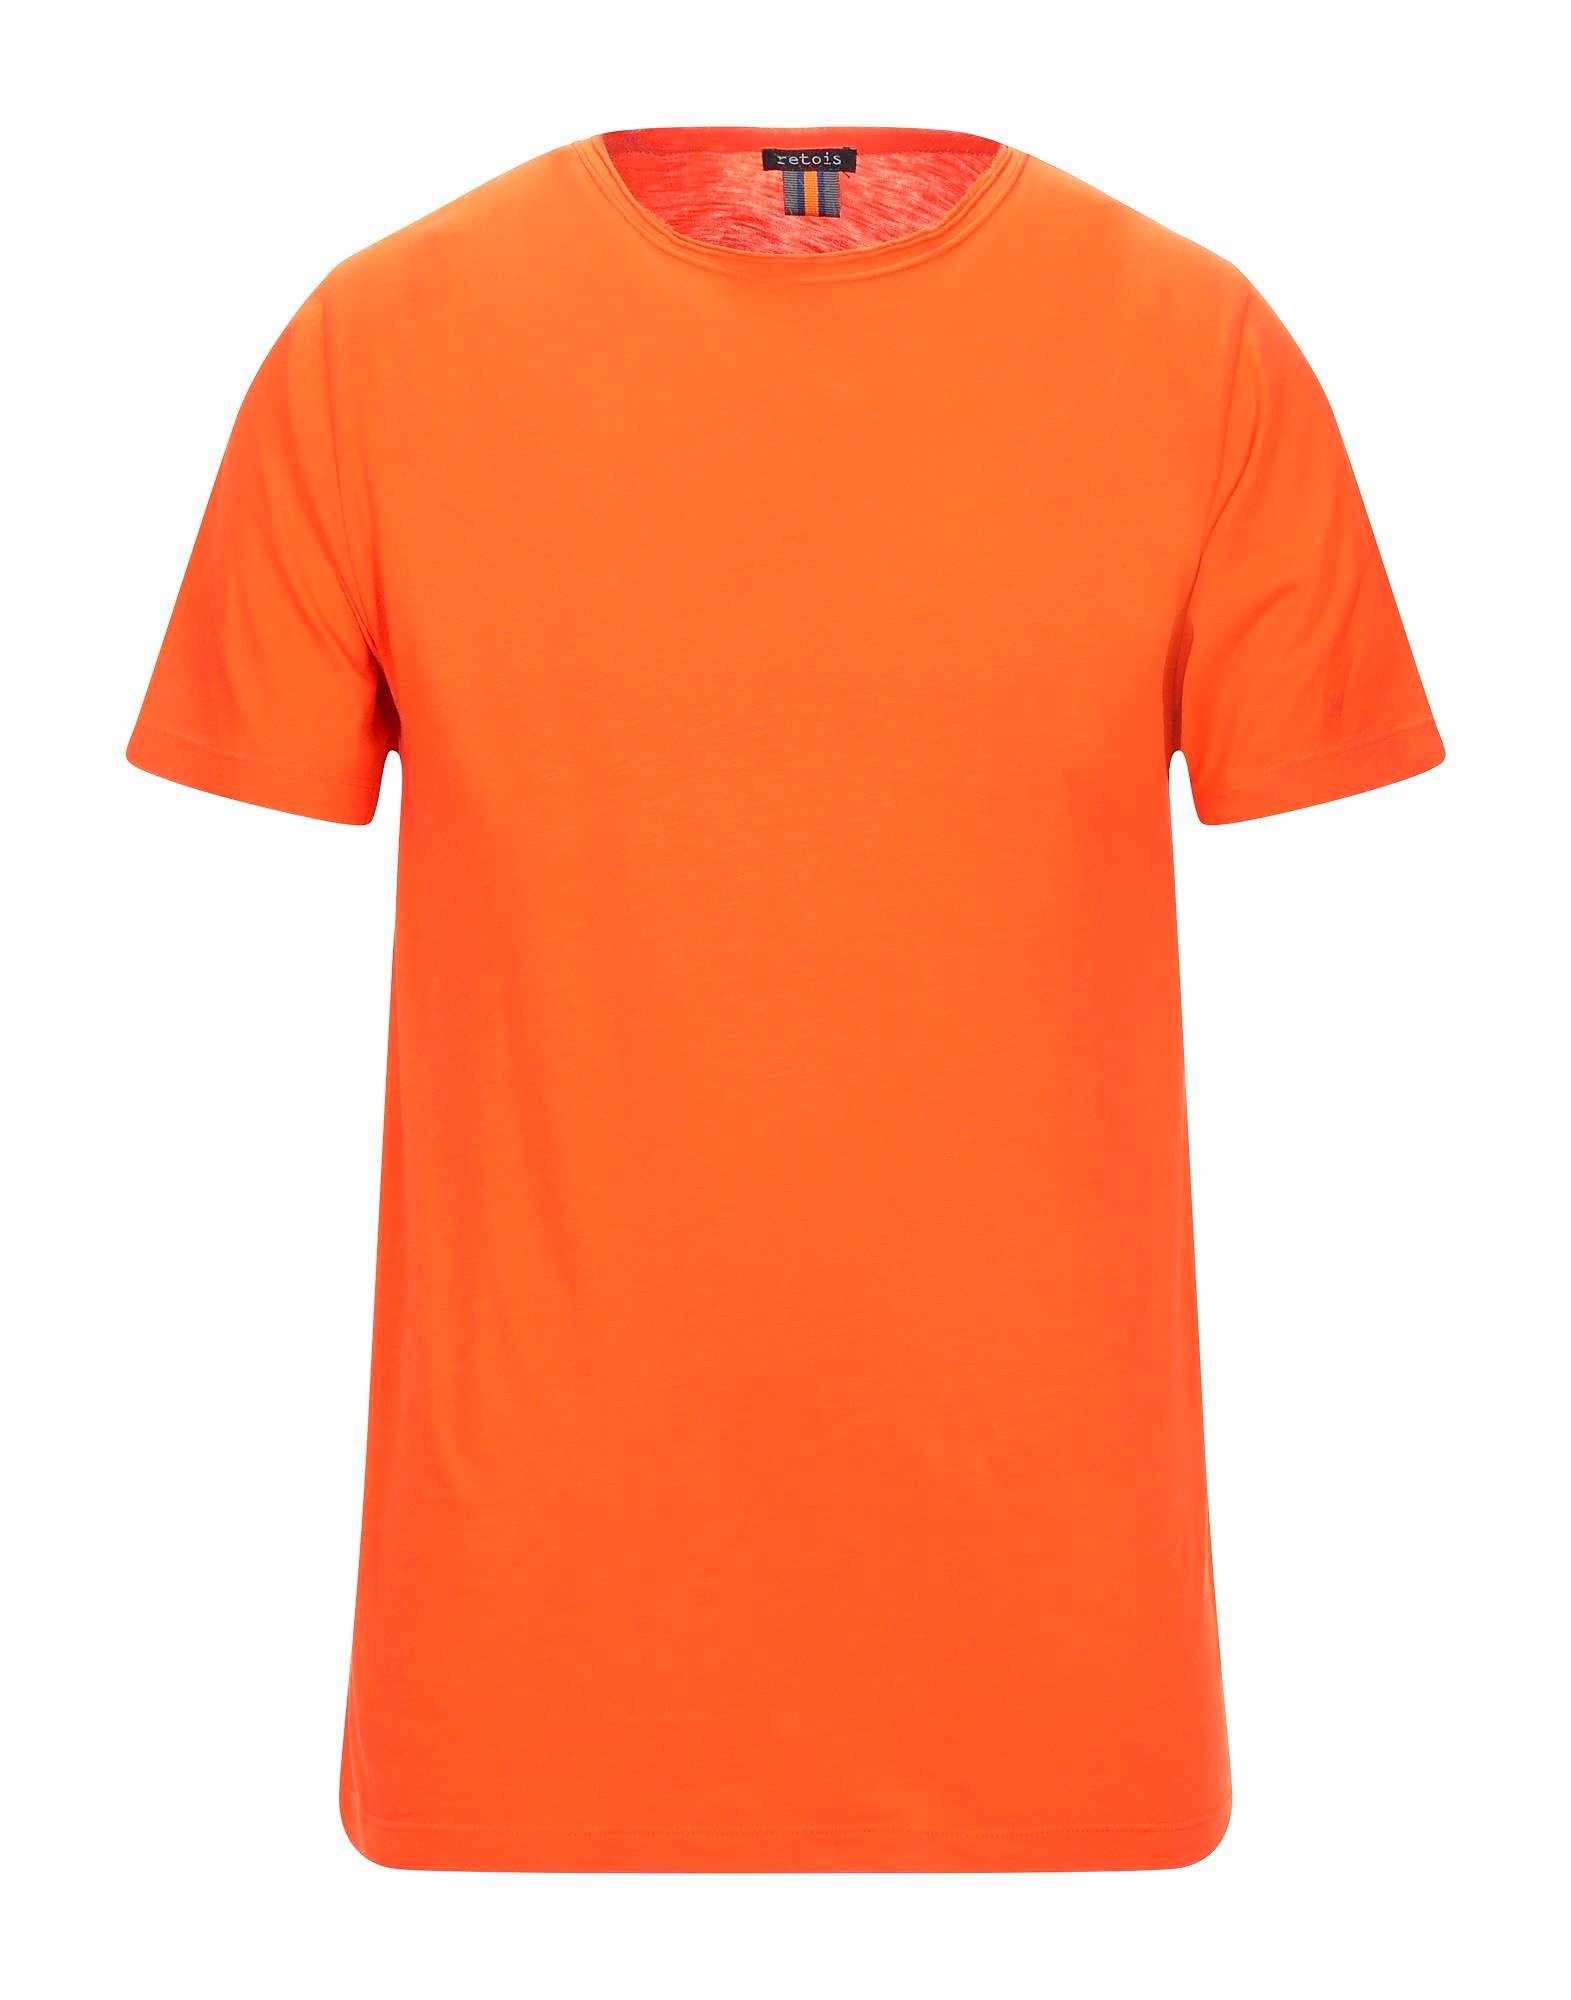 オレンジTシャツ コーデ特集！ビタミンカラーで明るい印象に仕上げた 